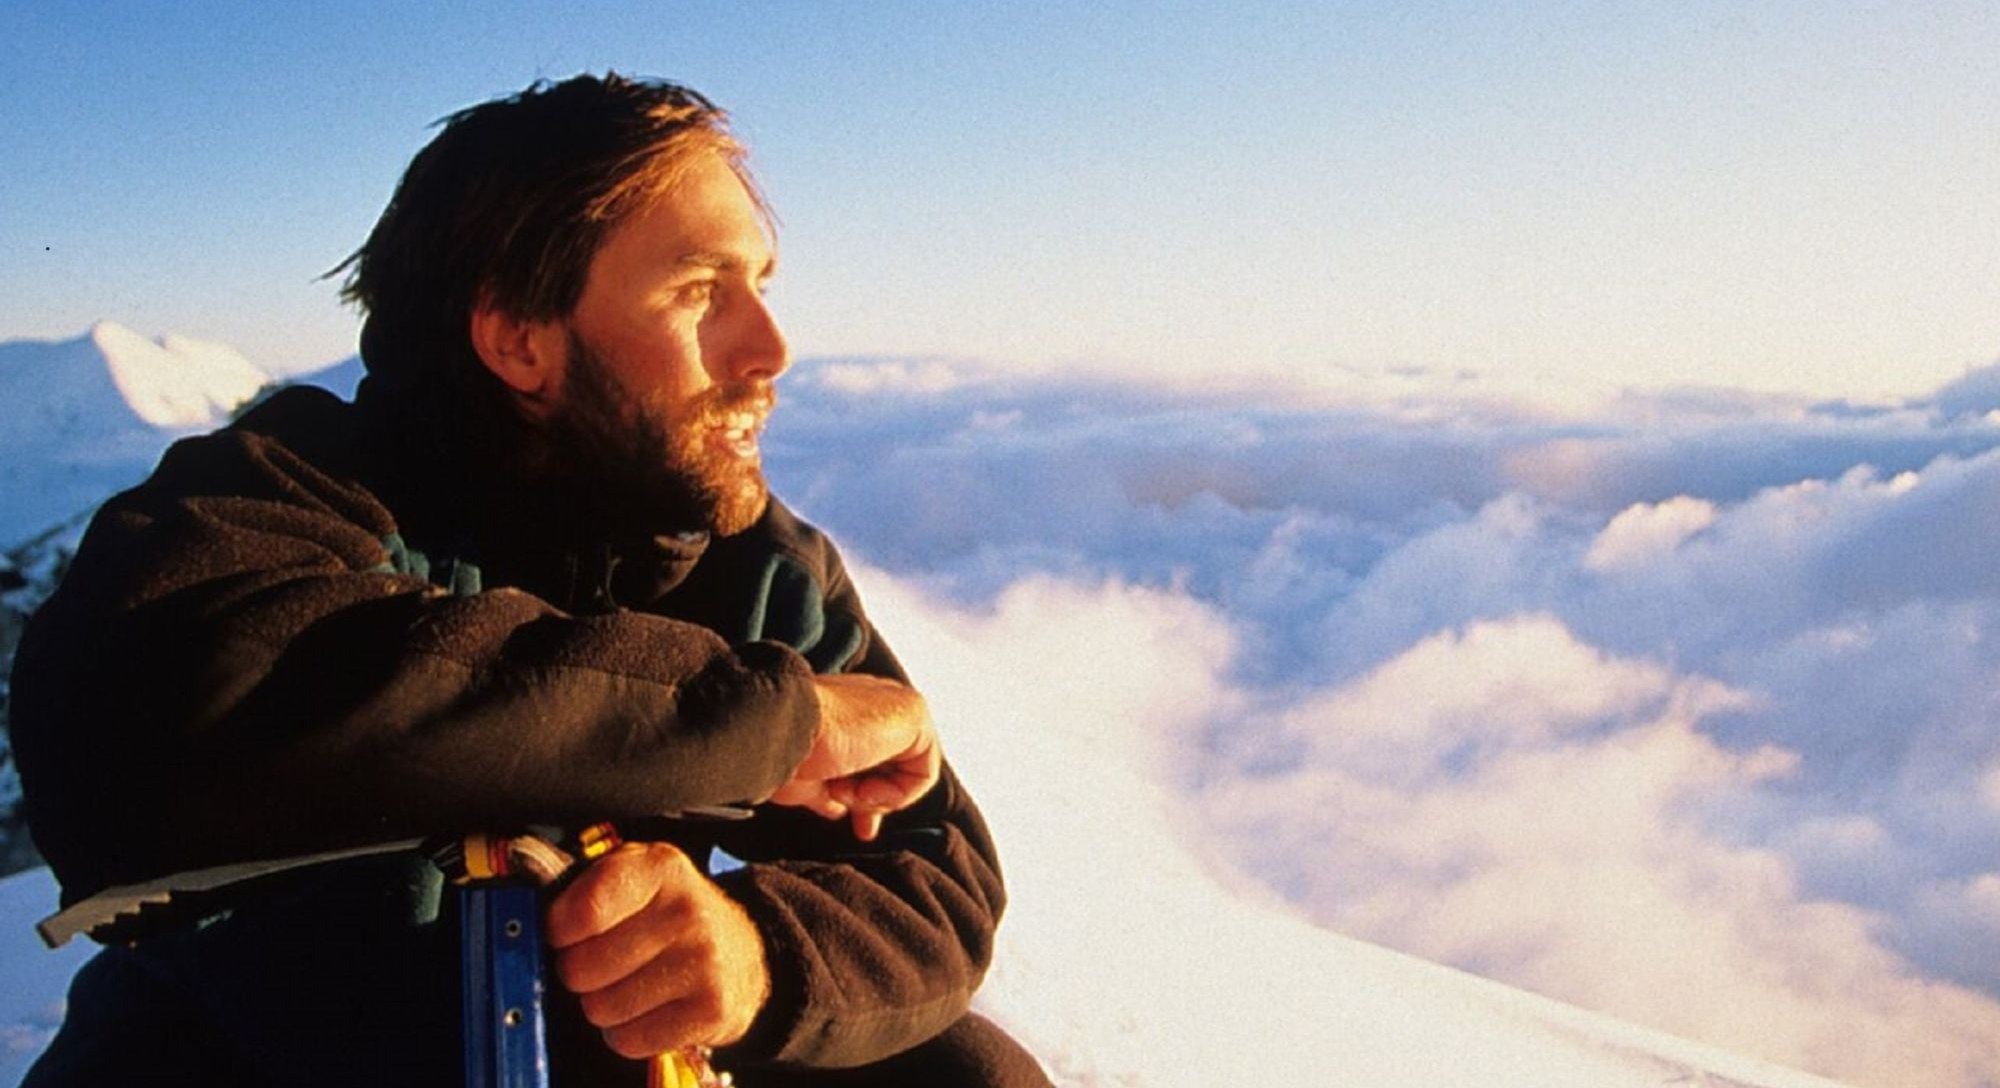 Erik Weihenmayer · First Blind Climber to Summit Everest